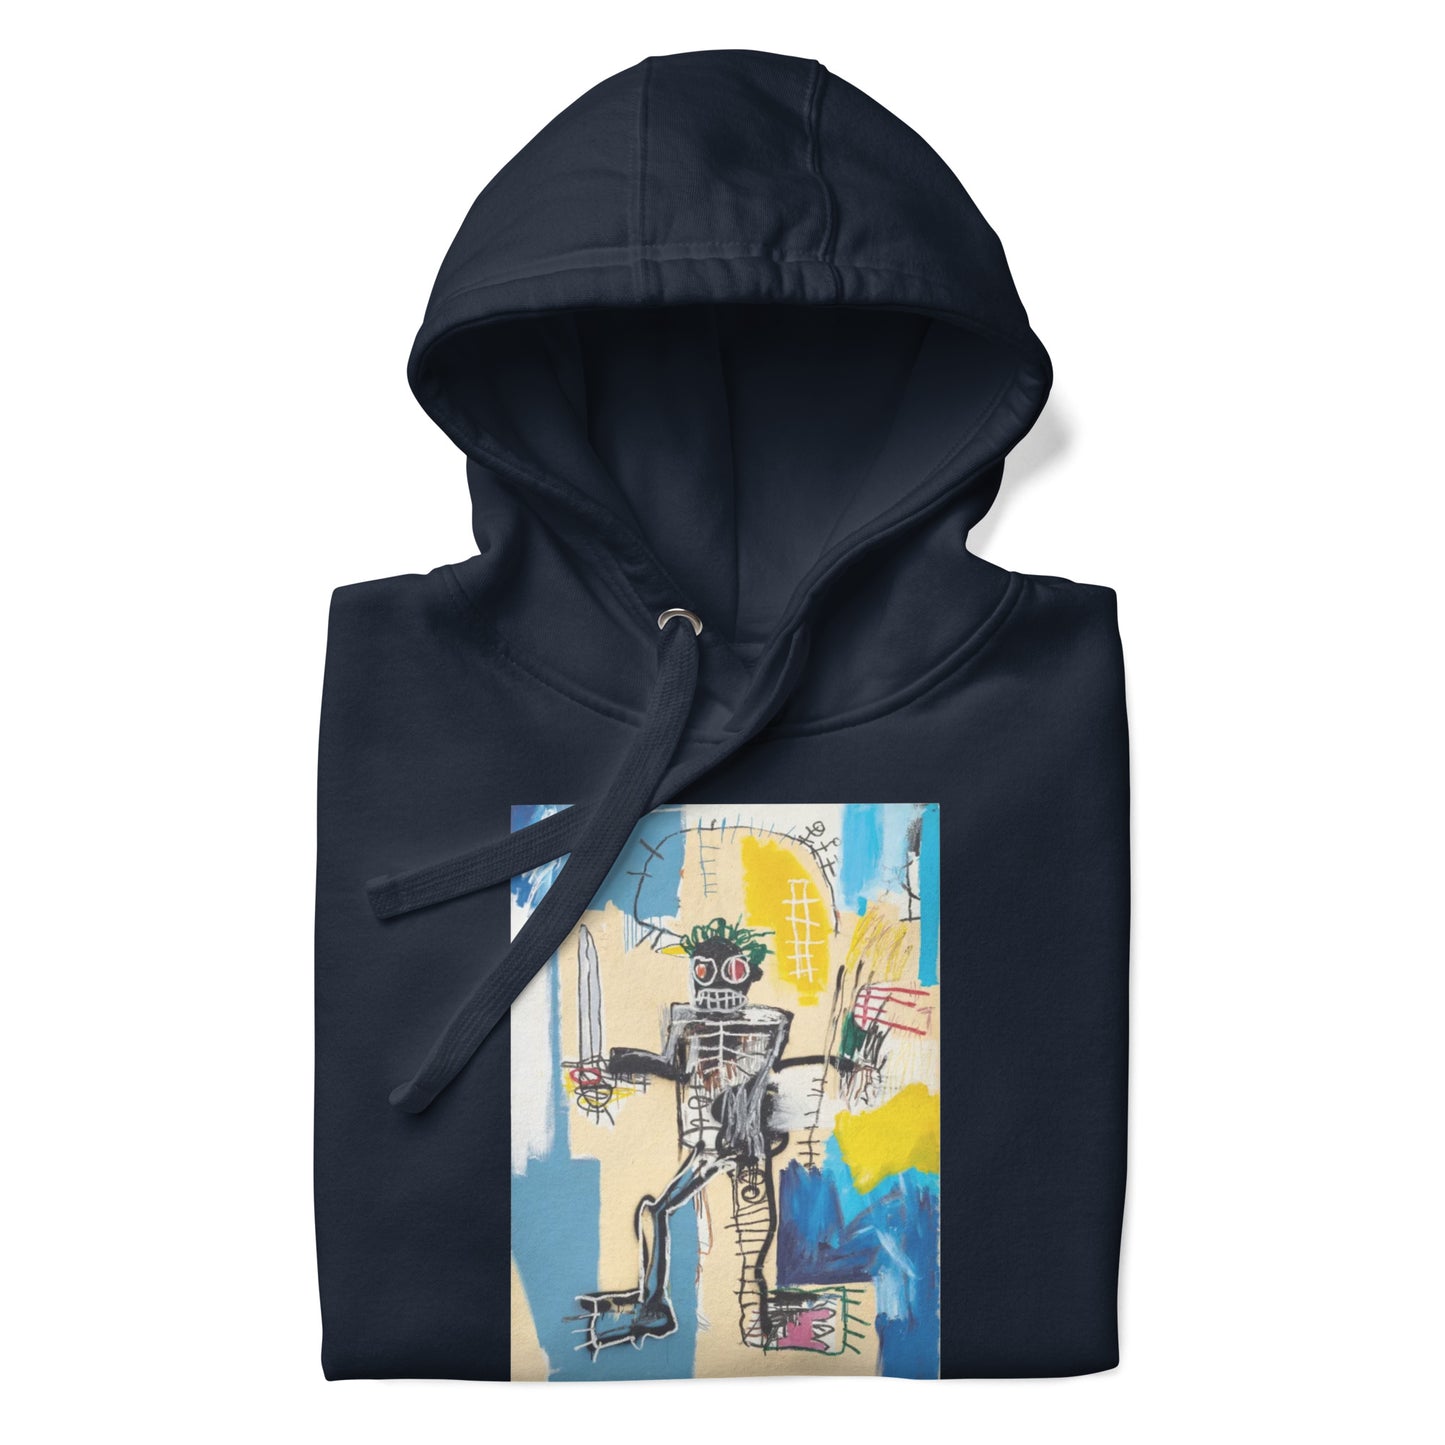 Jean-Michel Basquiat "Warrior" Artwork Printed Premium Streetwear Sweatshirt Hoodie Navy Blue